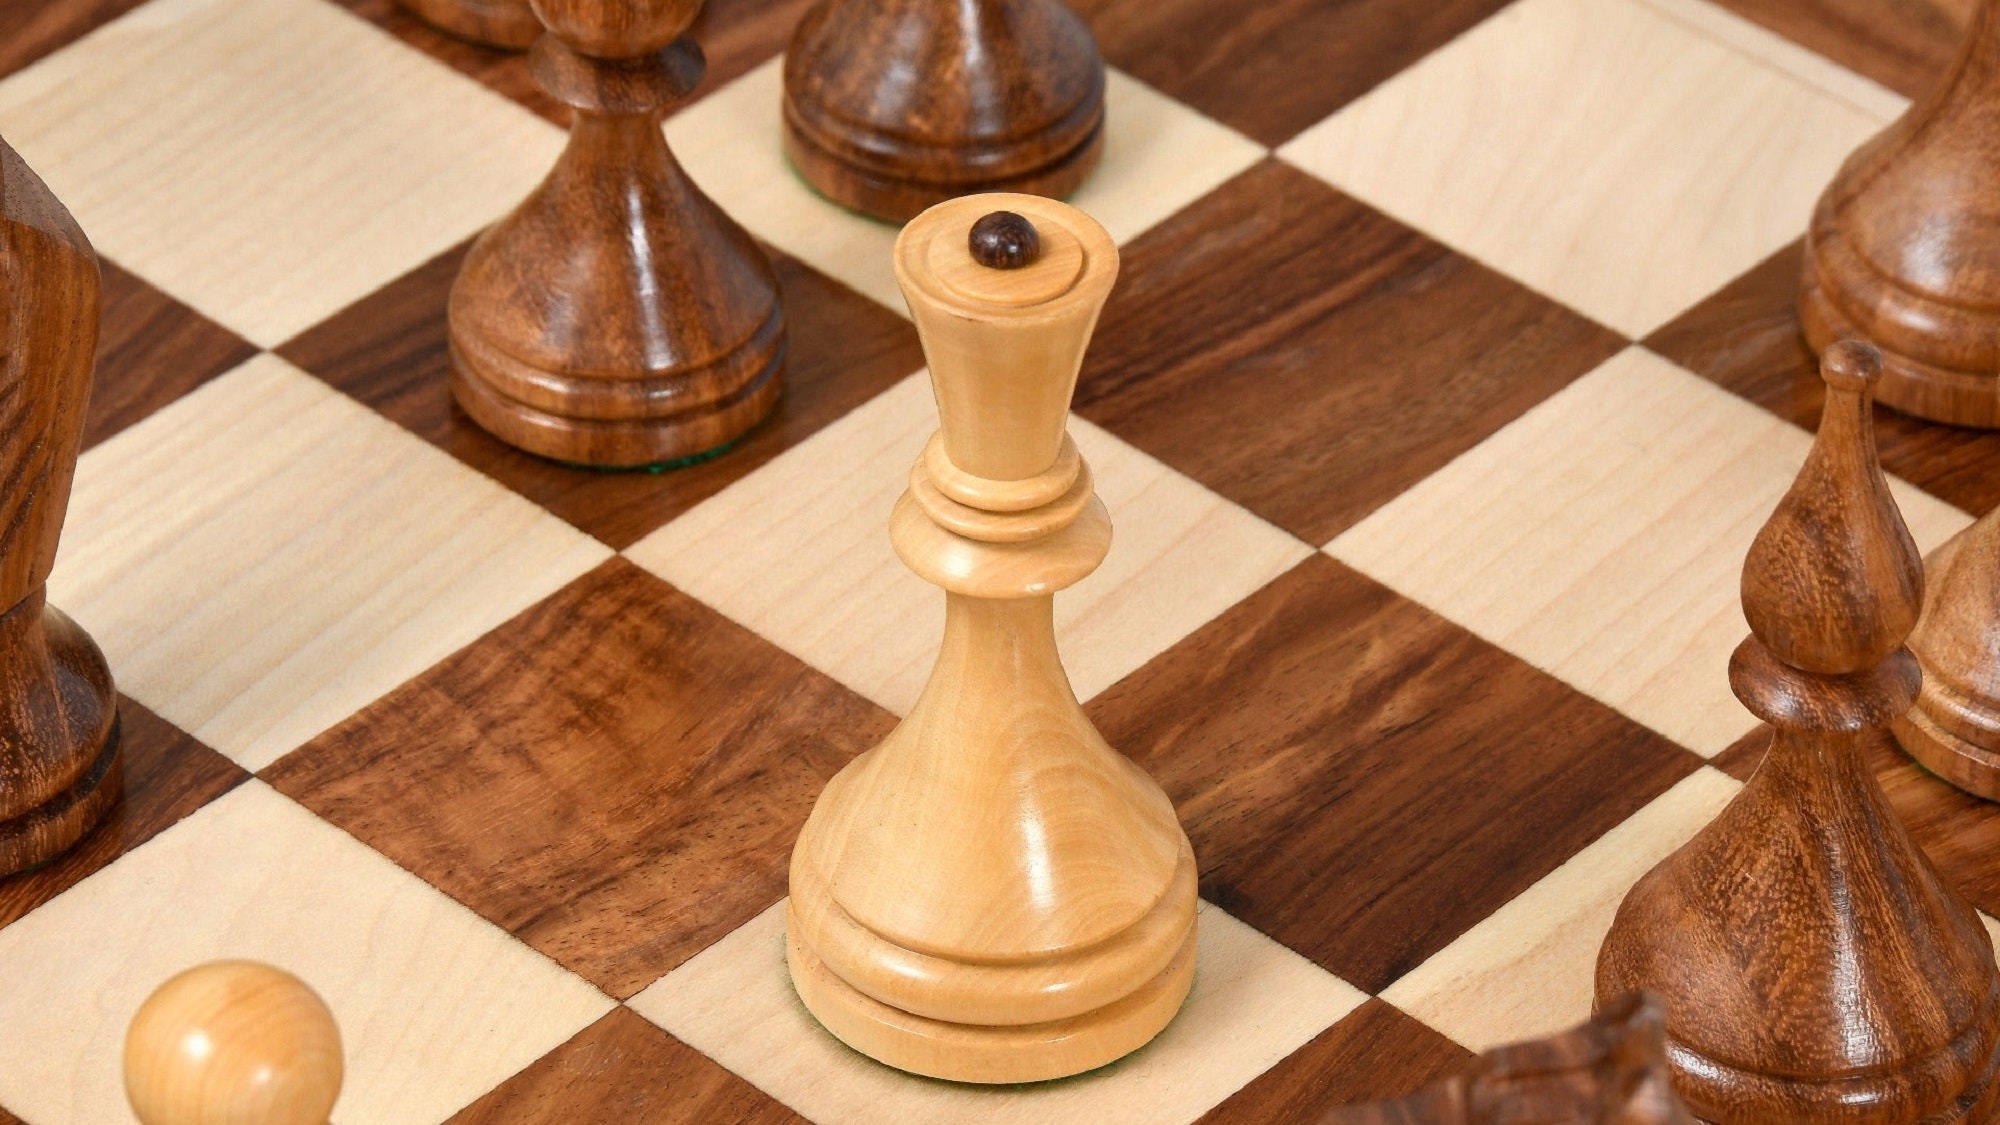 Conjunto de xadrez Baku do campeonato soviético de 1961